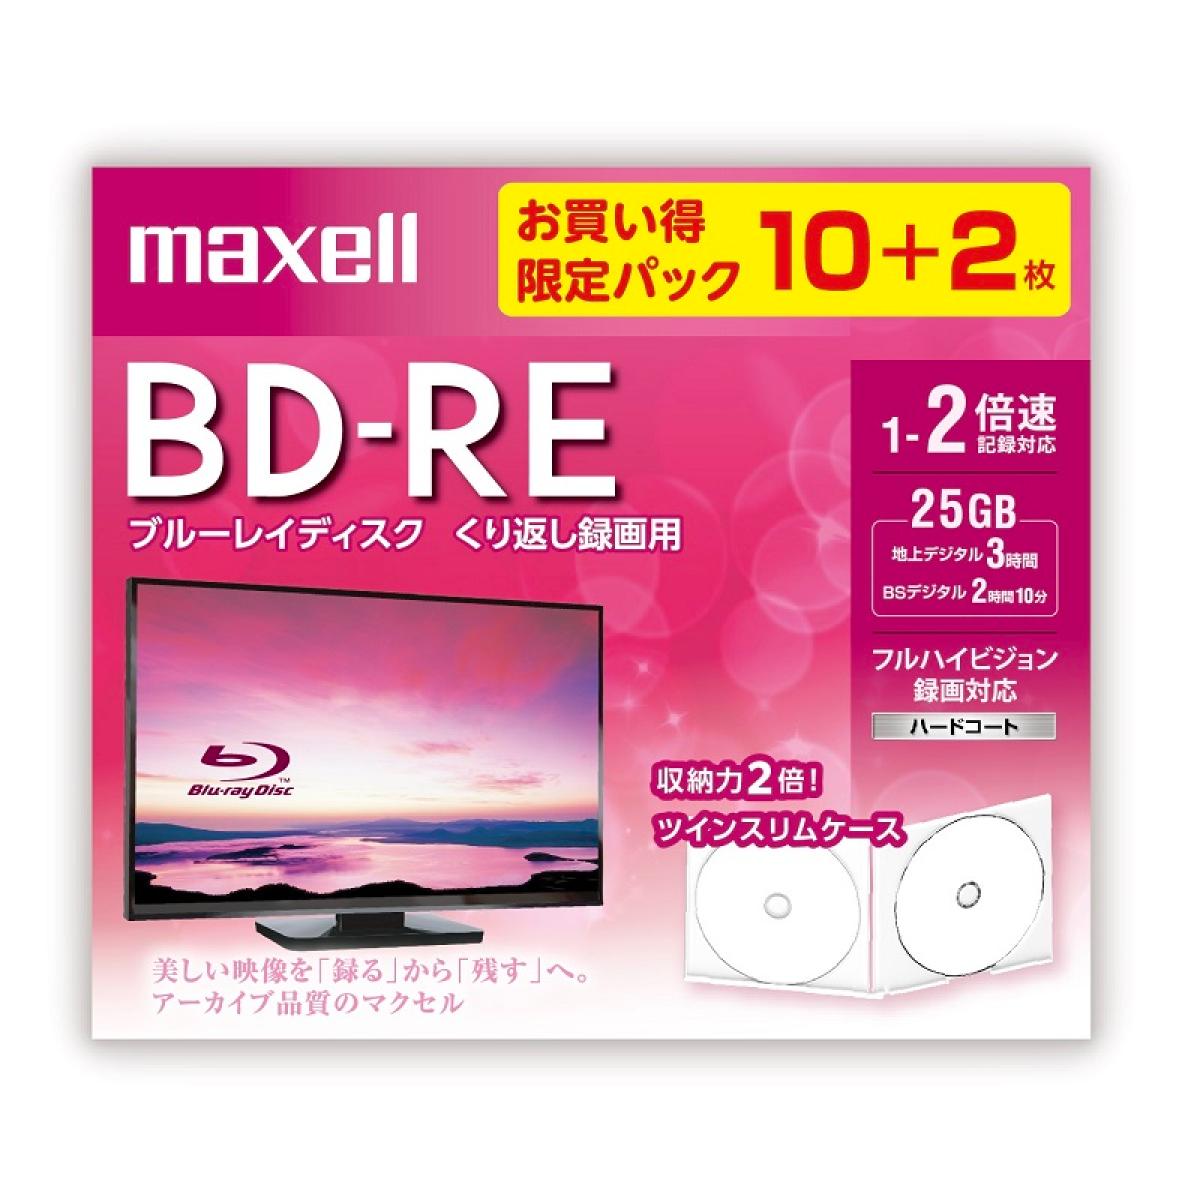 マクセル 録画用 BD-RE 10+2枚 25GB BEV25WPE.10S+2